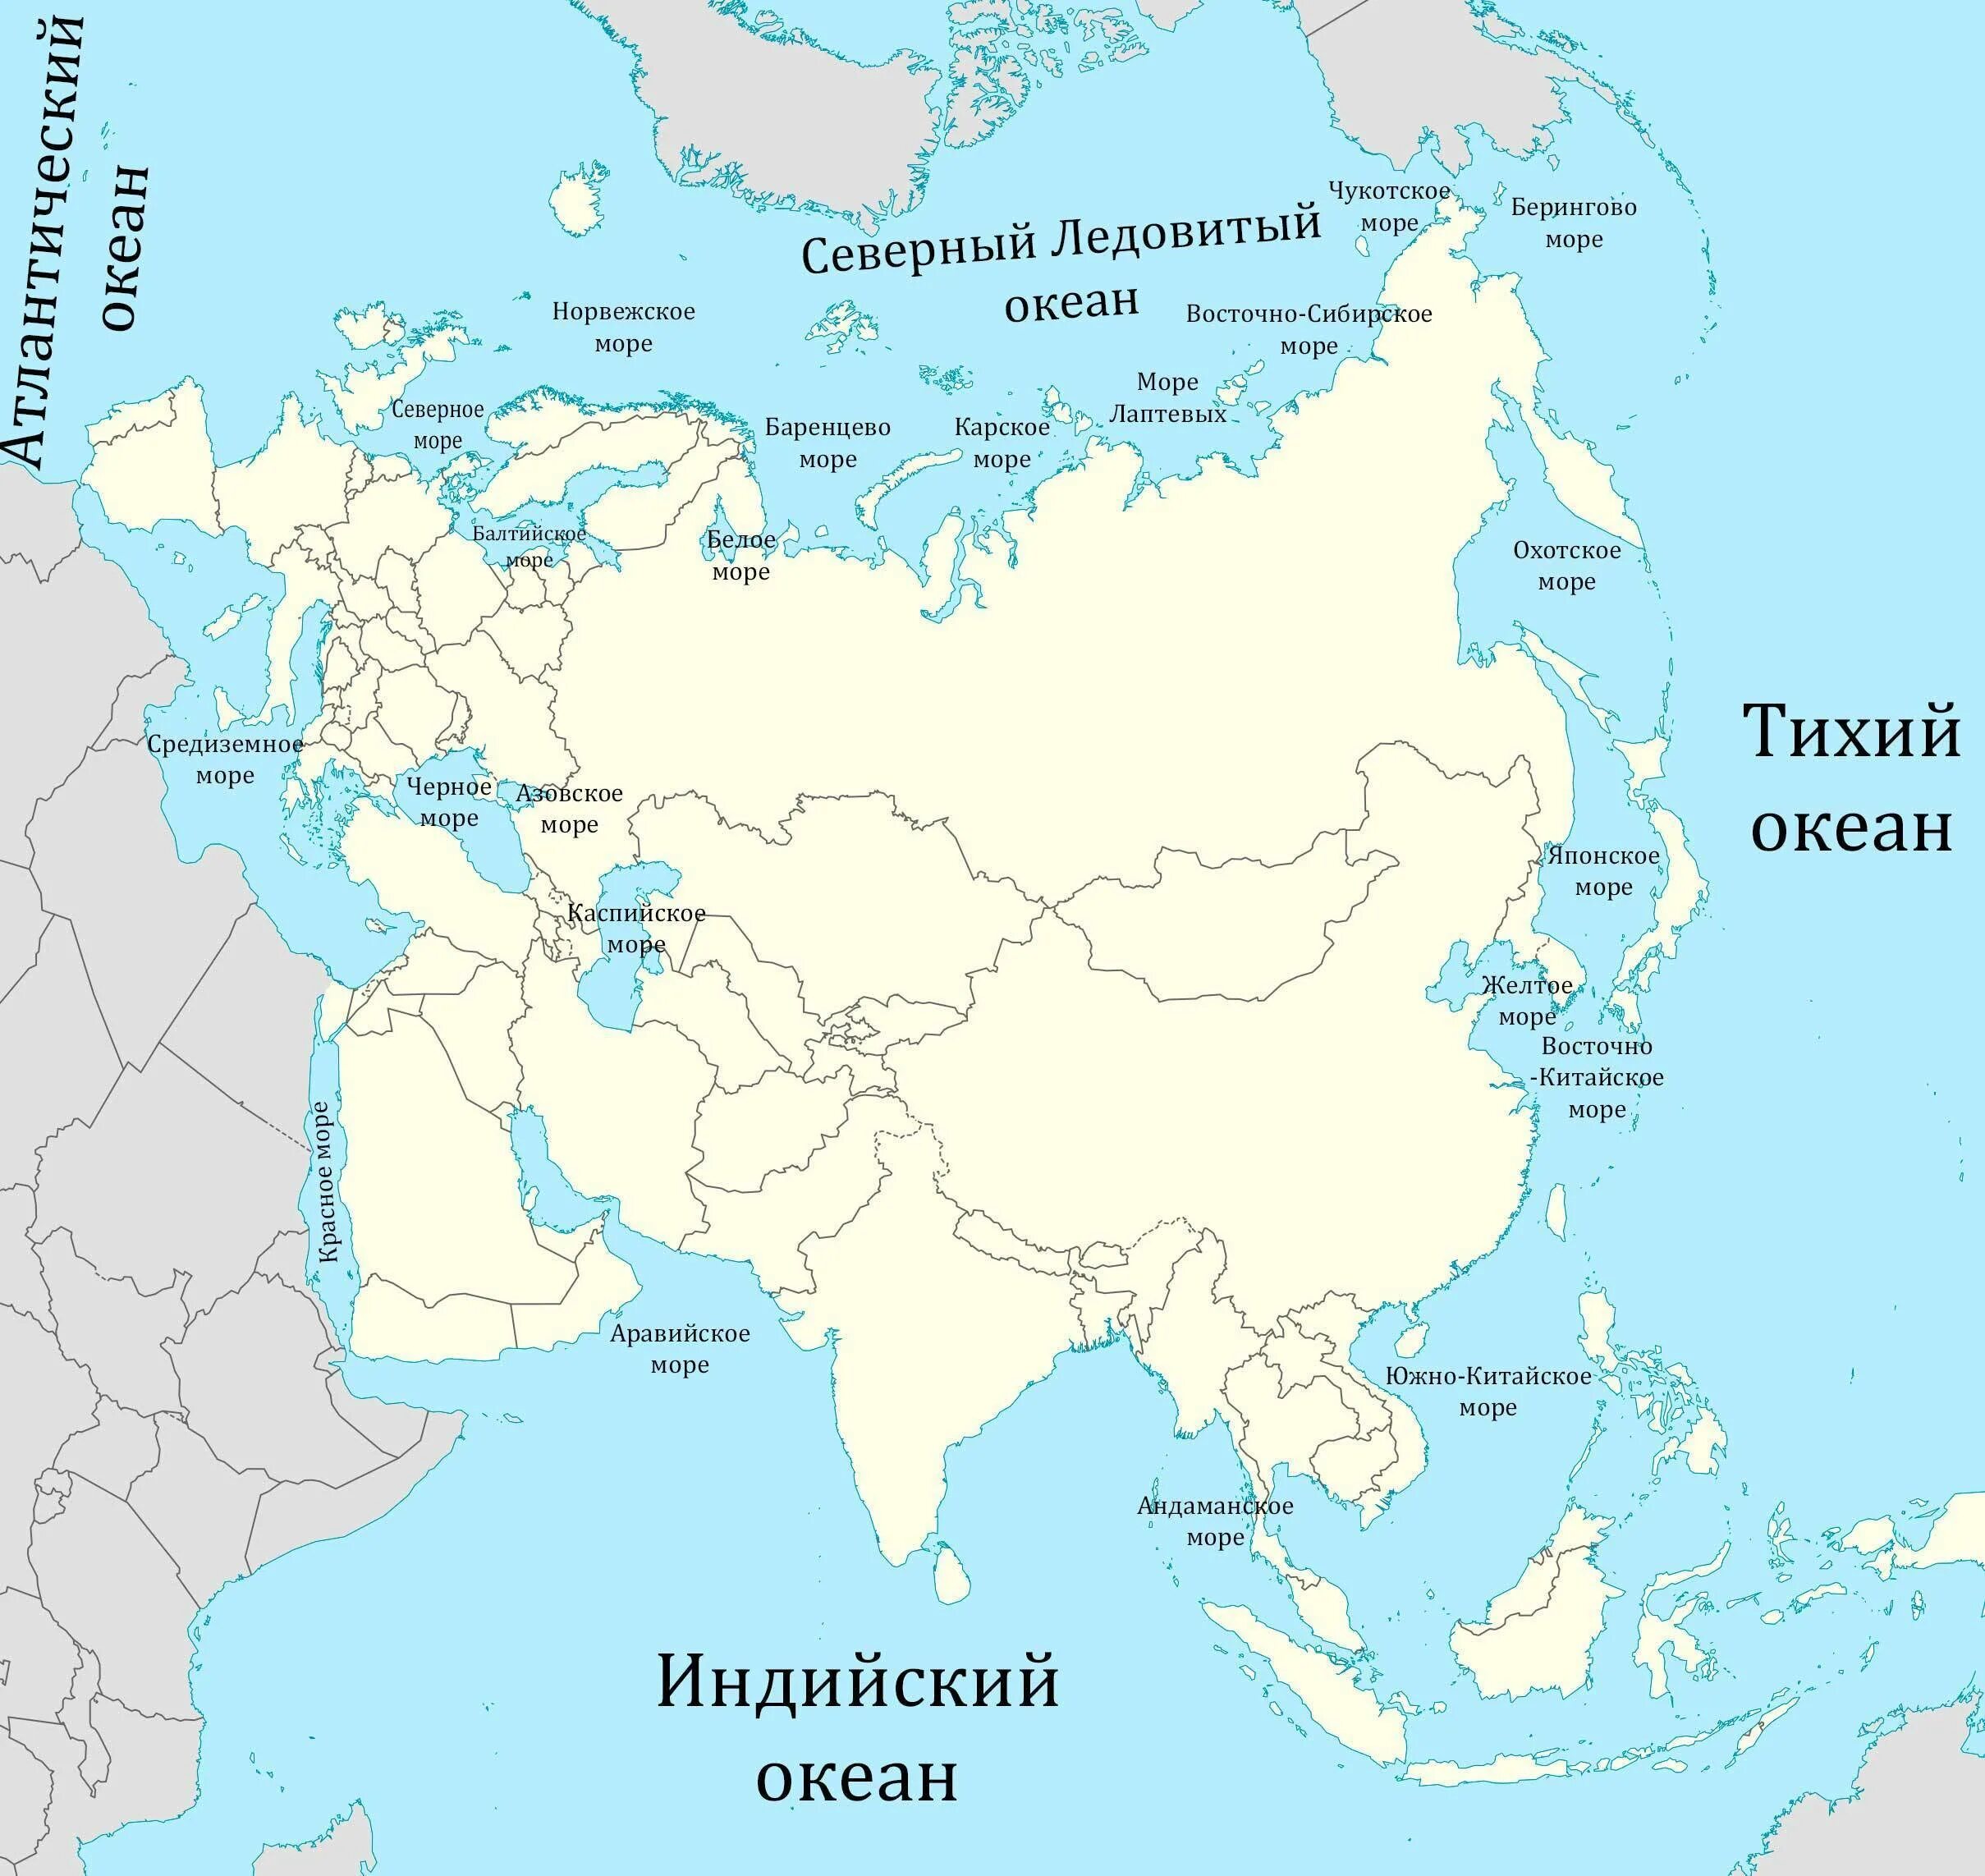 Карта Евразии с заливами и проливами морями Океанами. Моря омывающие Евразию на карте. Моря океаны заливы проливы омывающие Евразию на карте. Название морей омывающих территорию России на карте.